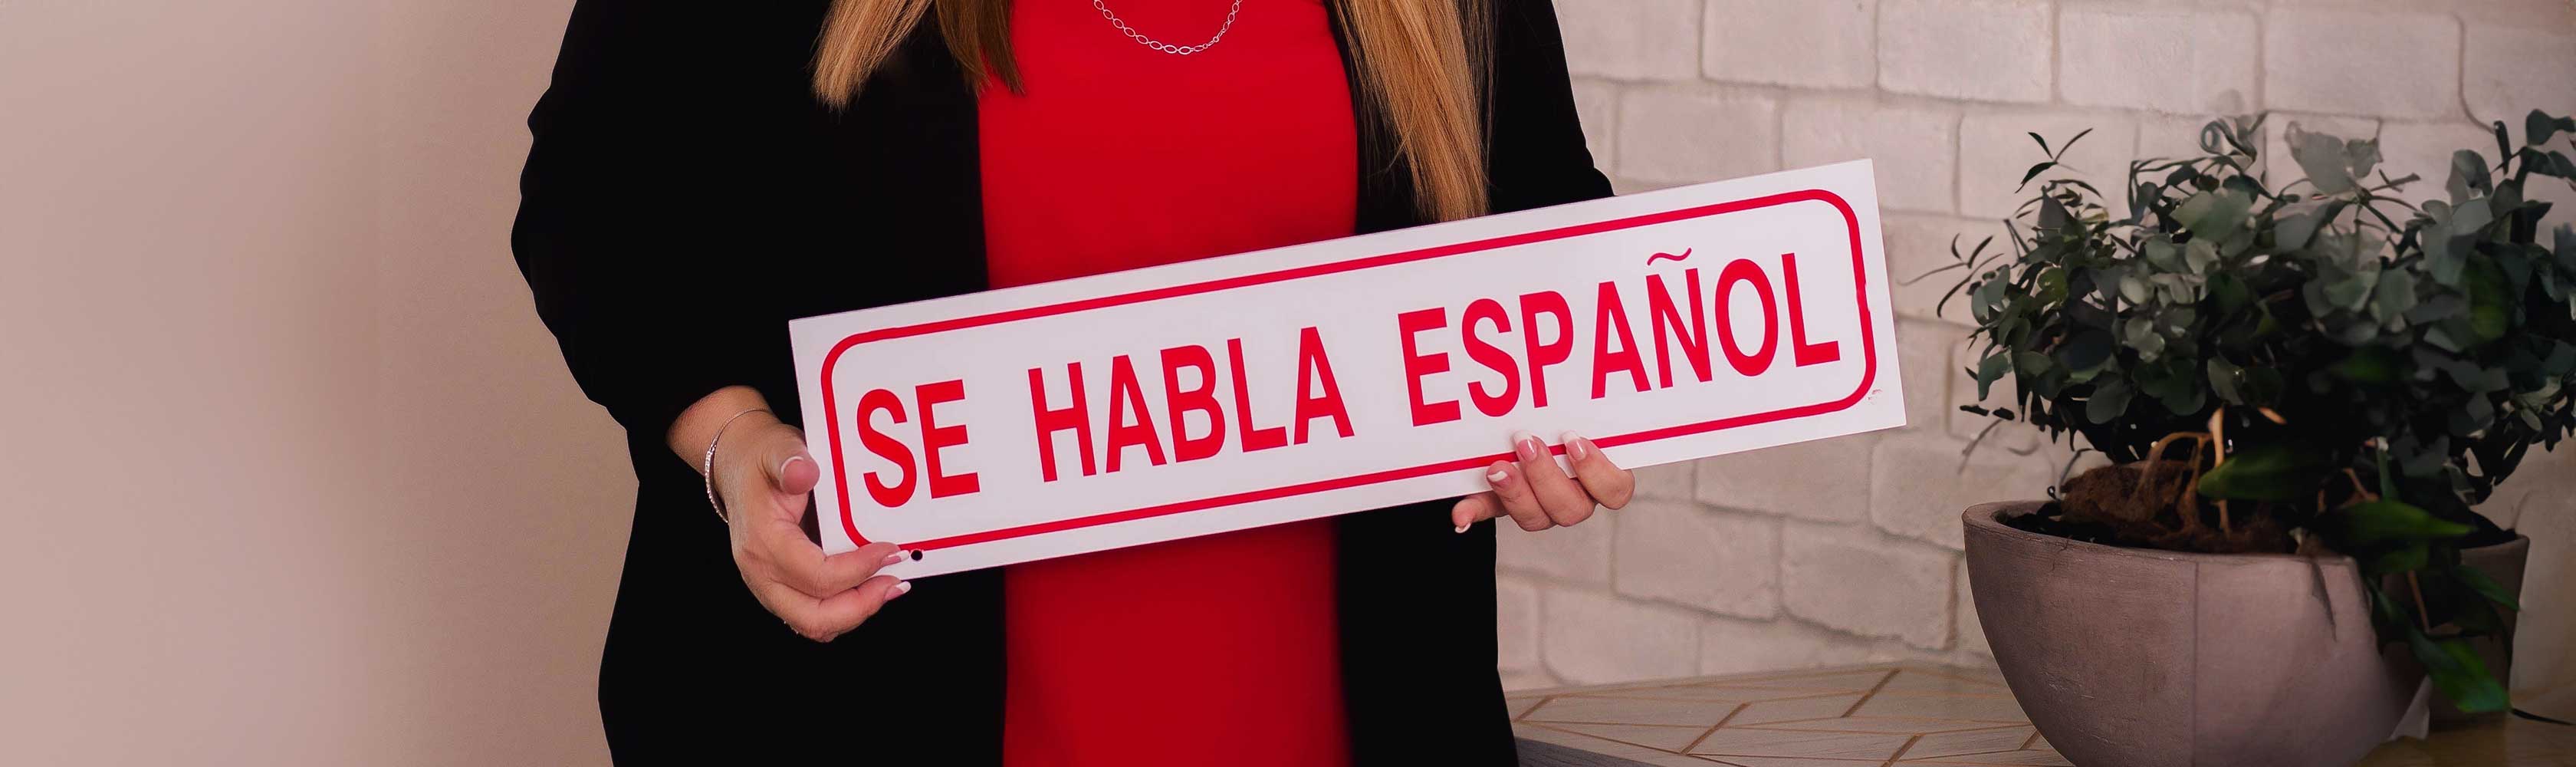 Ejemplo: Se habla español